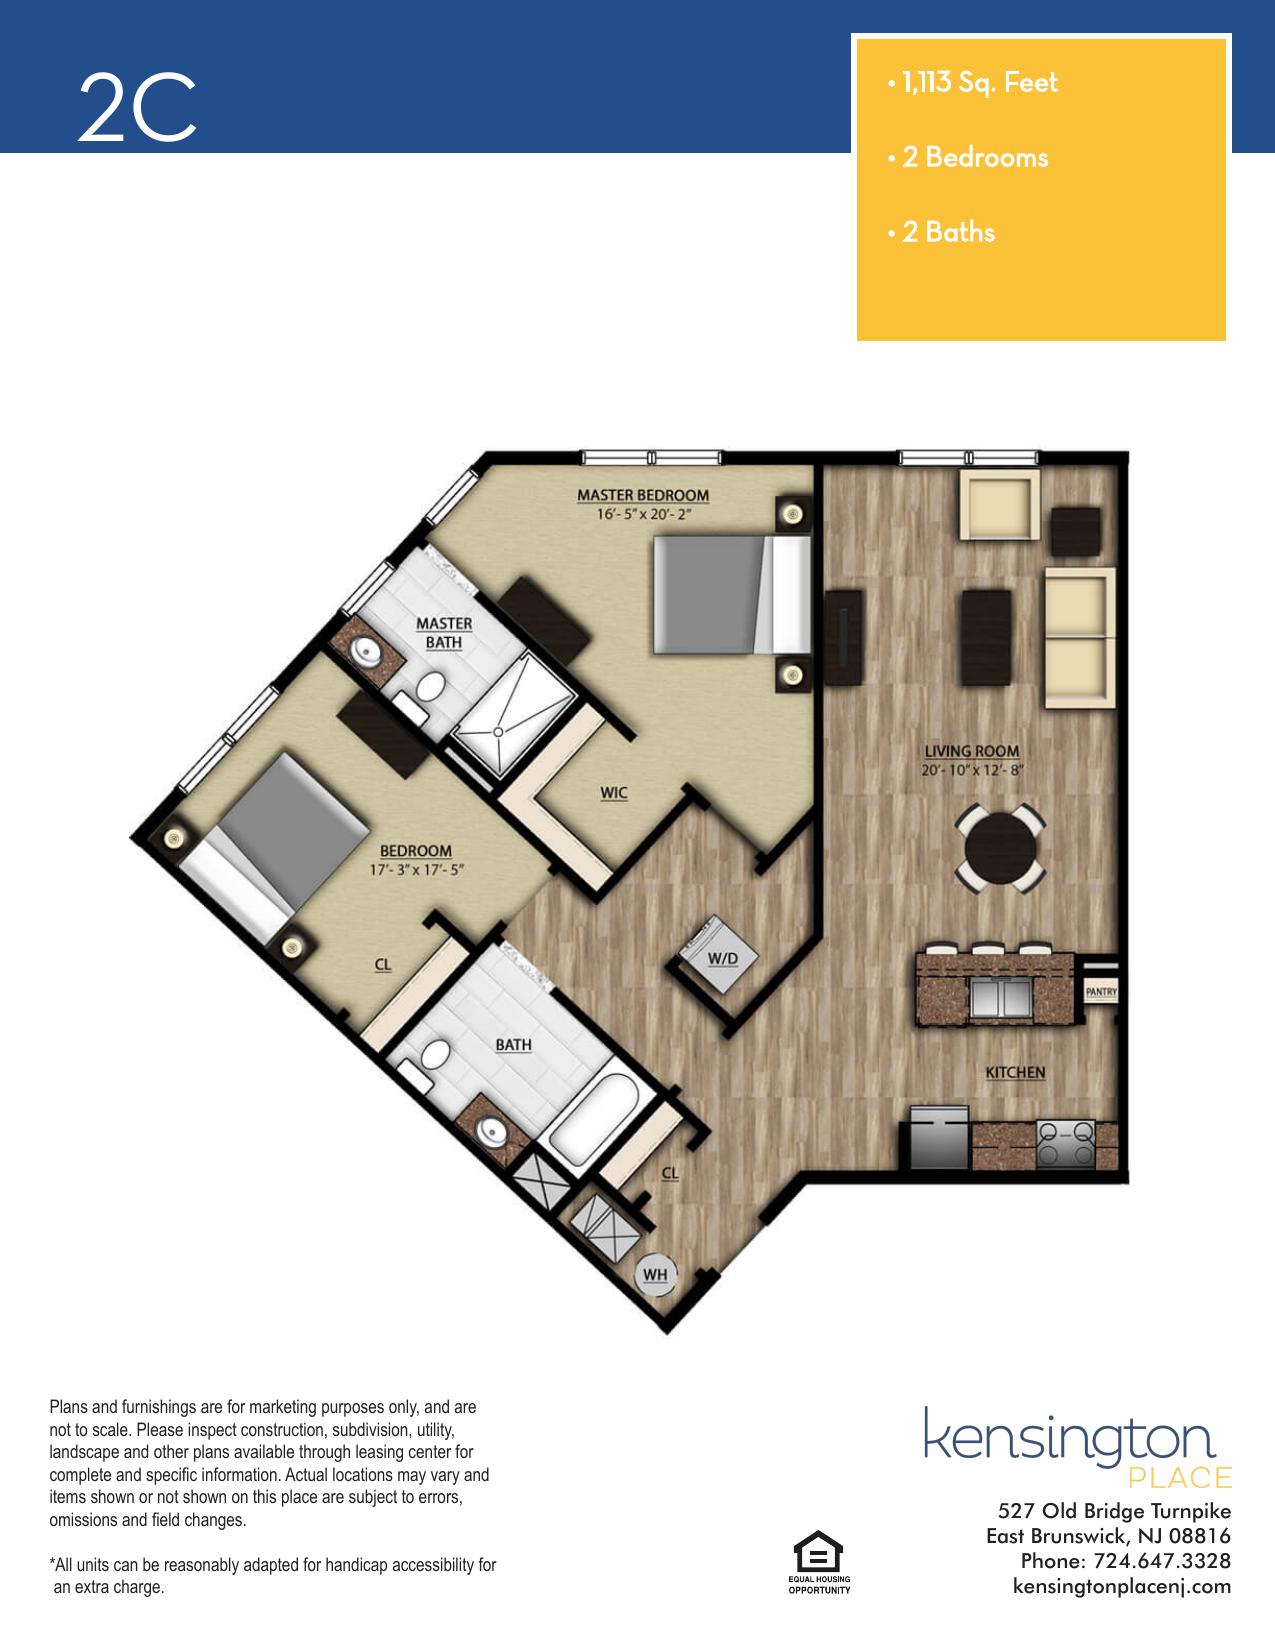 Kensington Place Apartment Floor Plan 2C